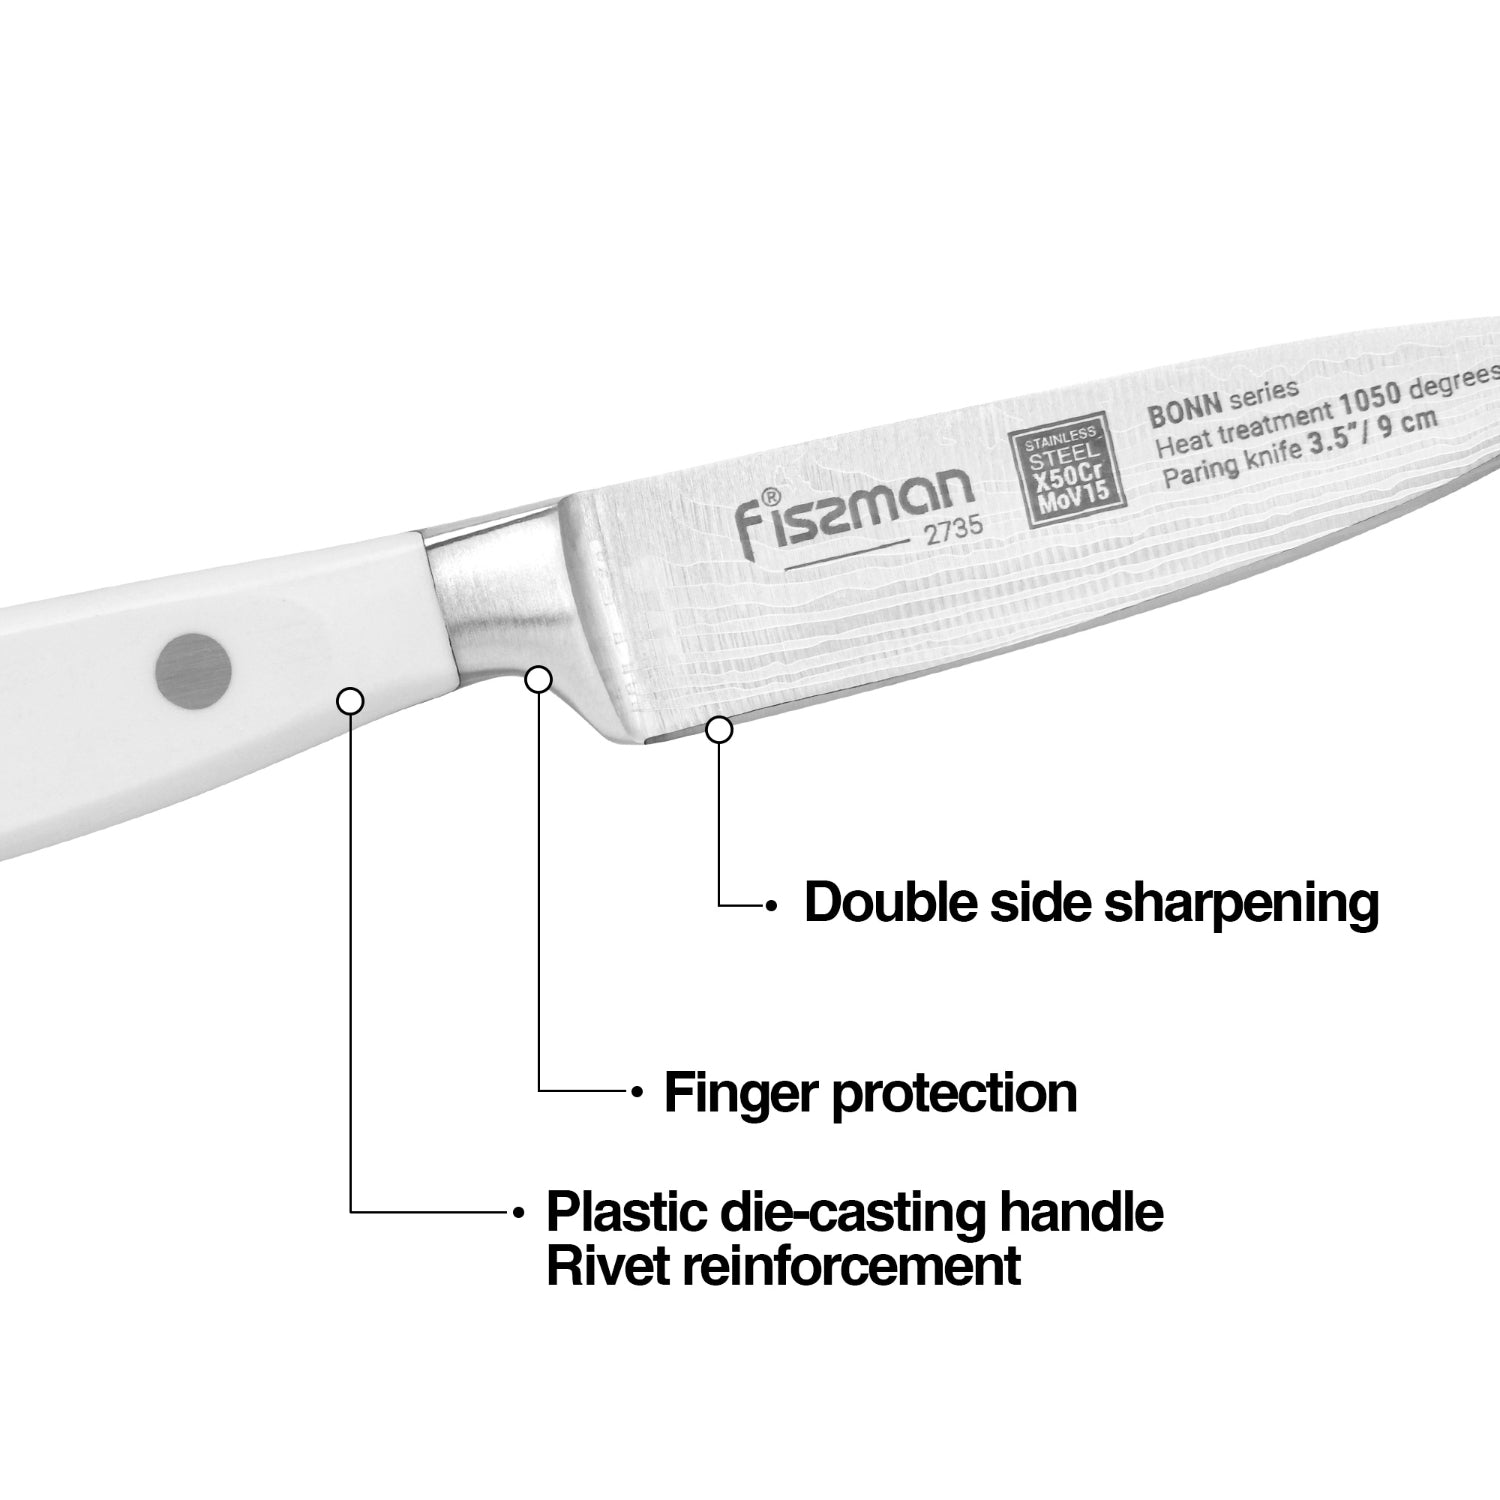 Fissman 3.5'' Paring Knife Bonn - X50CrMoV15 steel